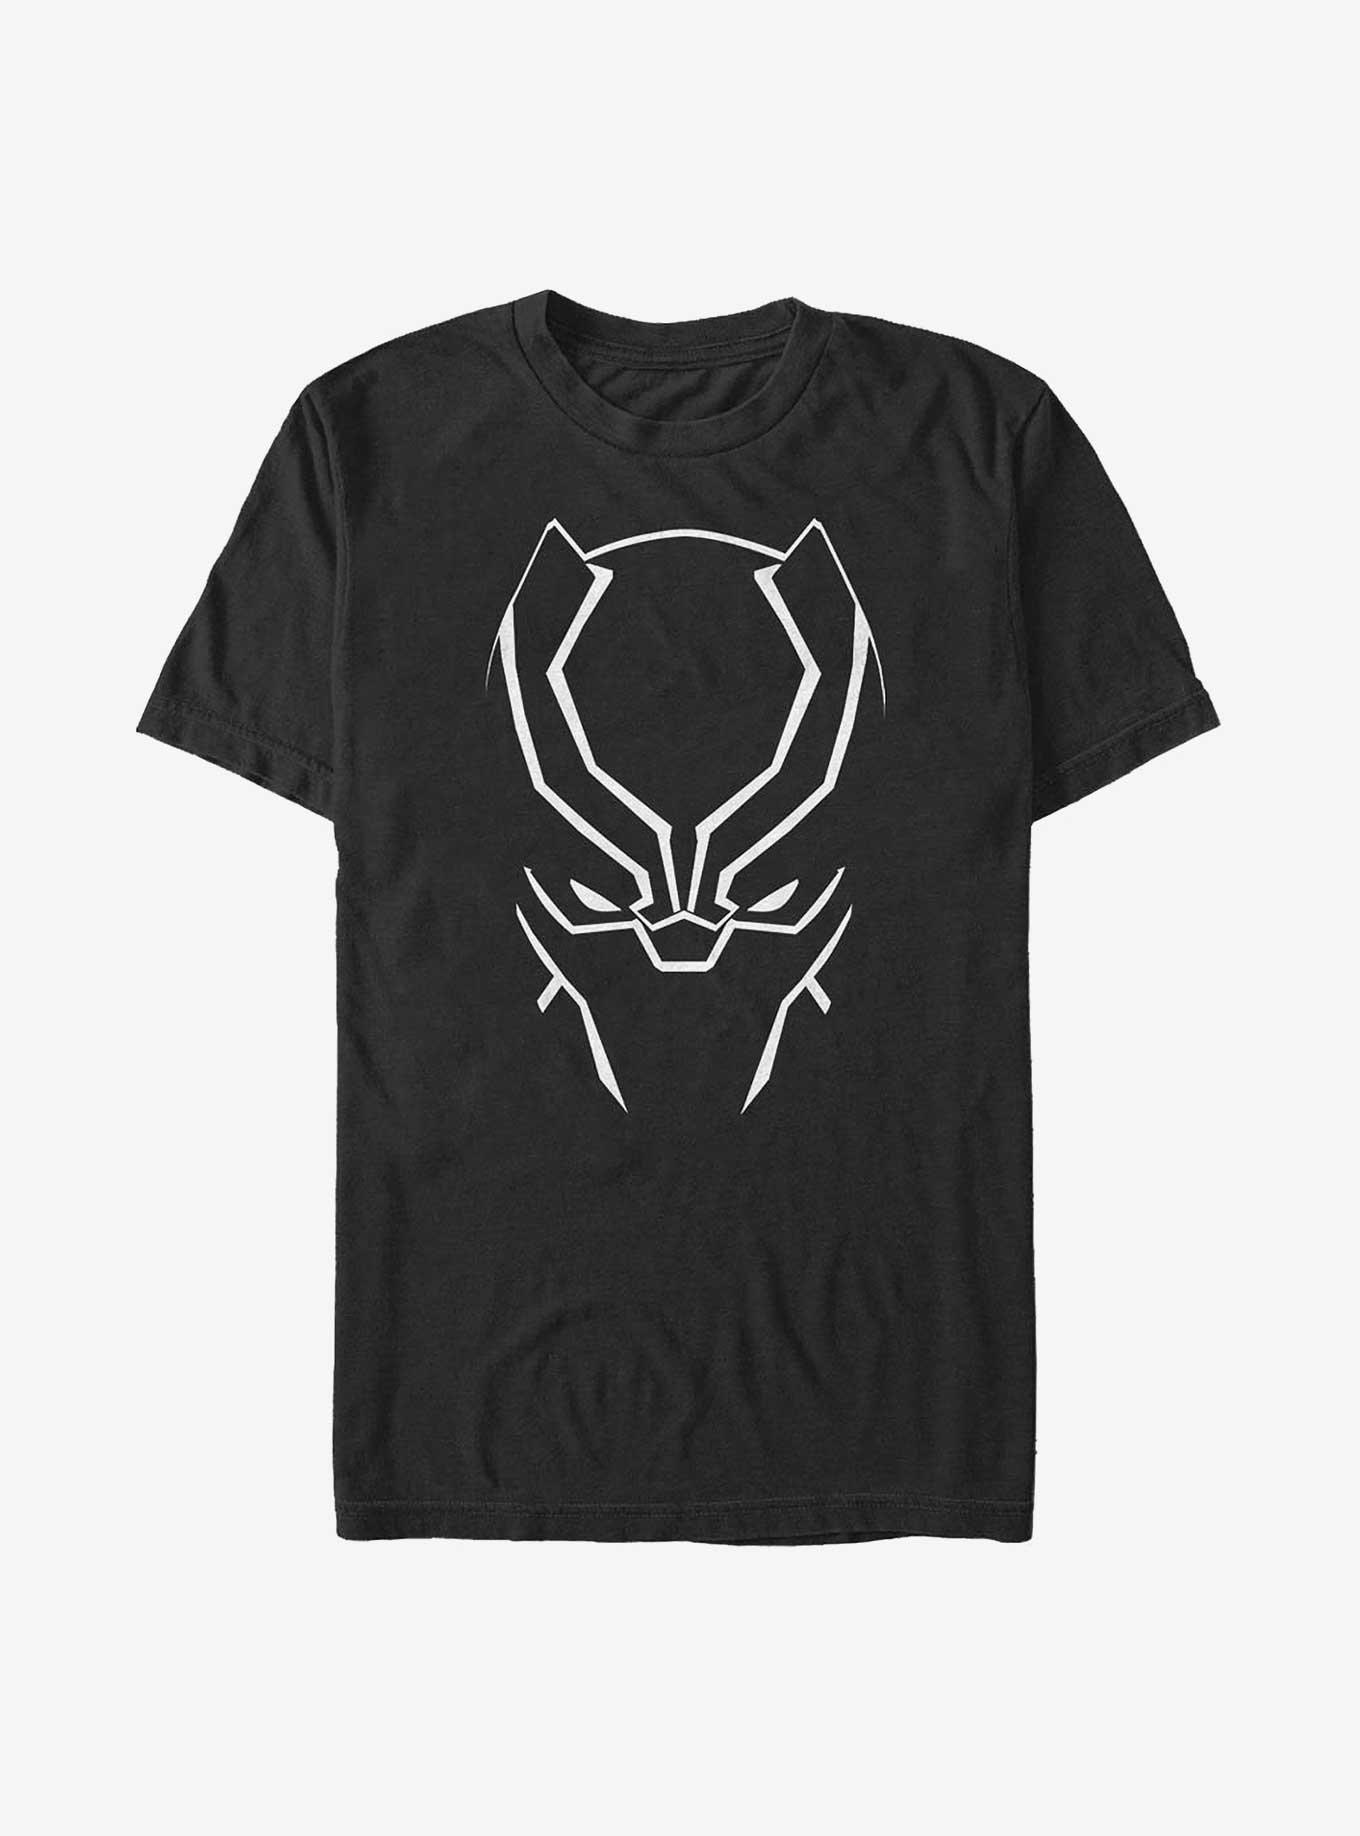 Marvel Black Panther Face T-Shirt, BLACK, hi-res